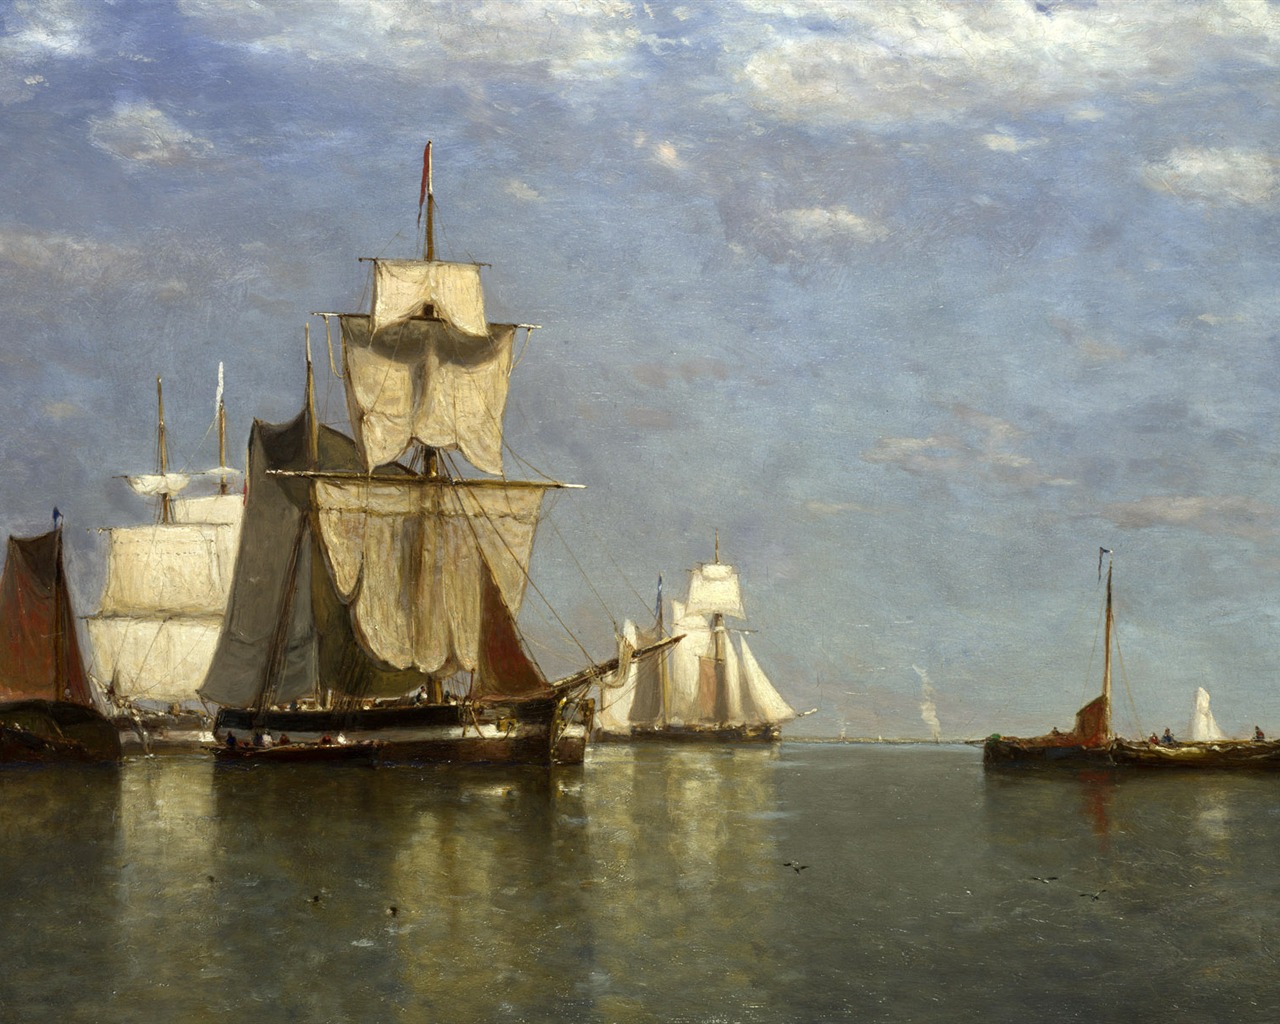 伦敦画廊帆船 壁纸(二)11 - 1280x1024